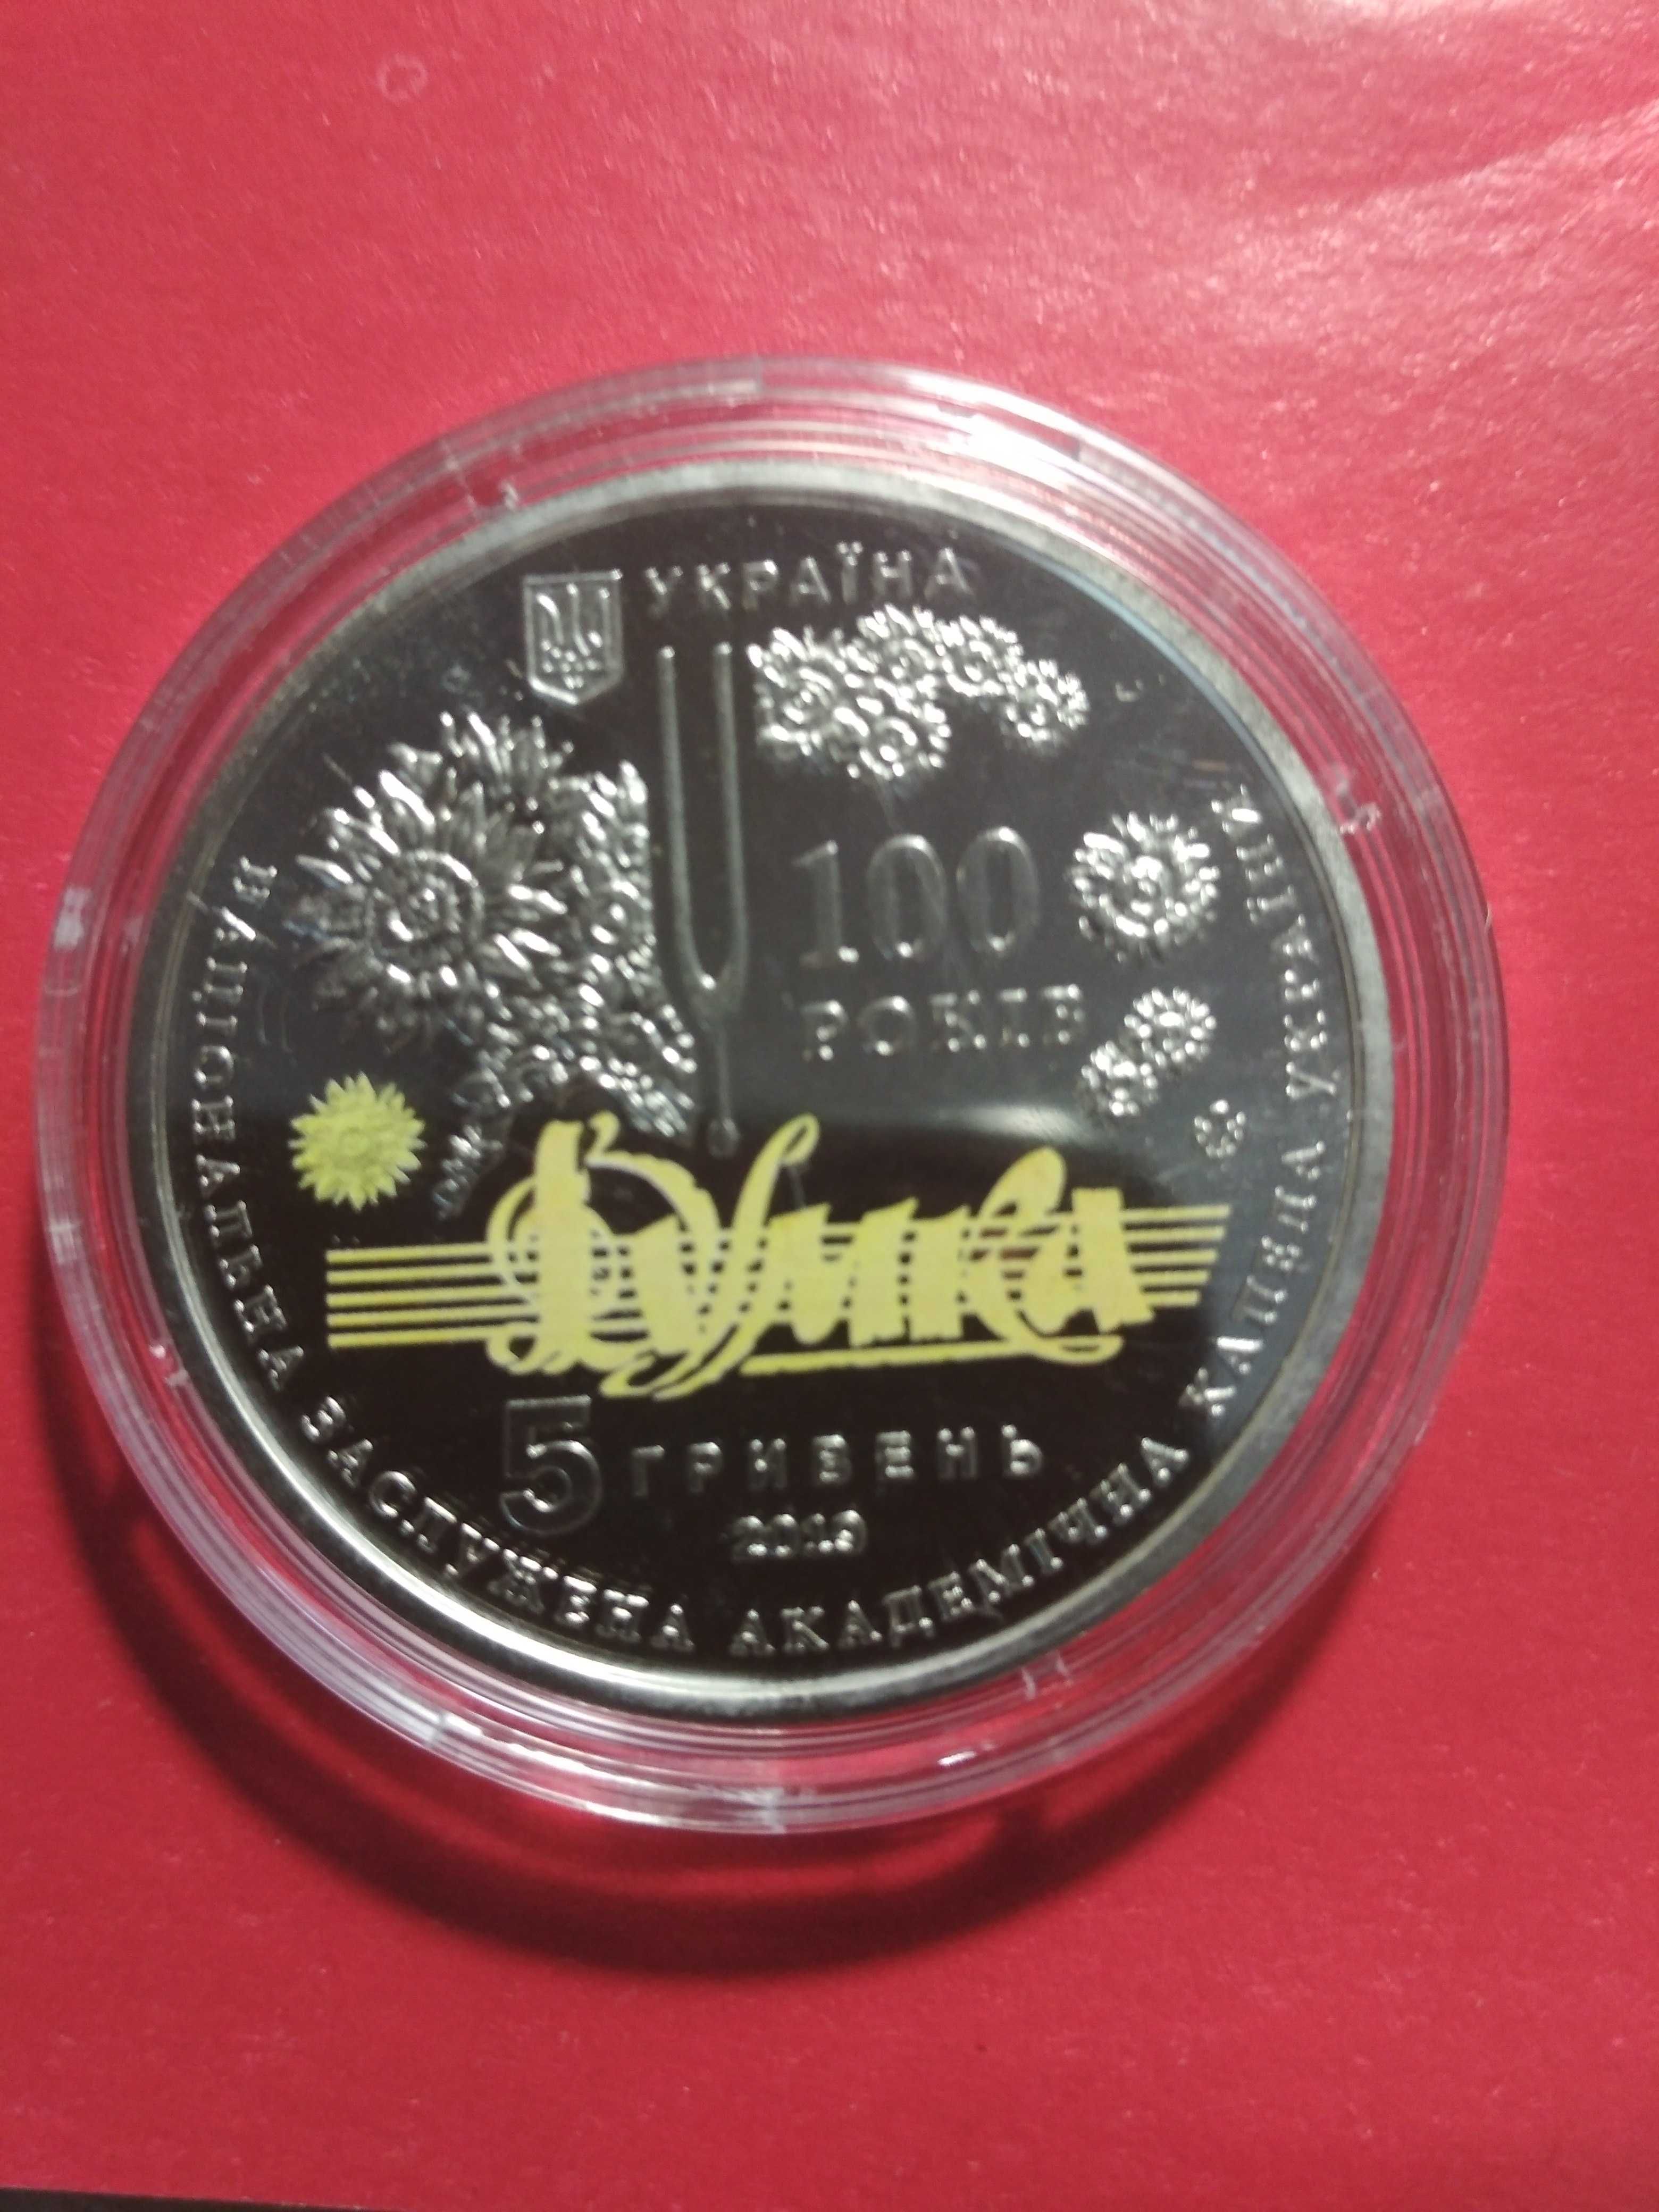 Монеты Украины НБУ